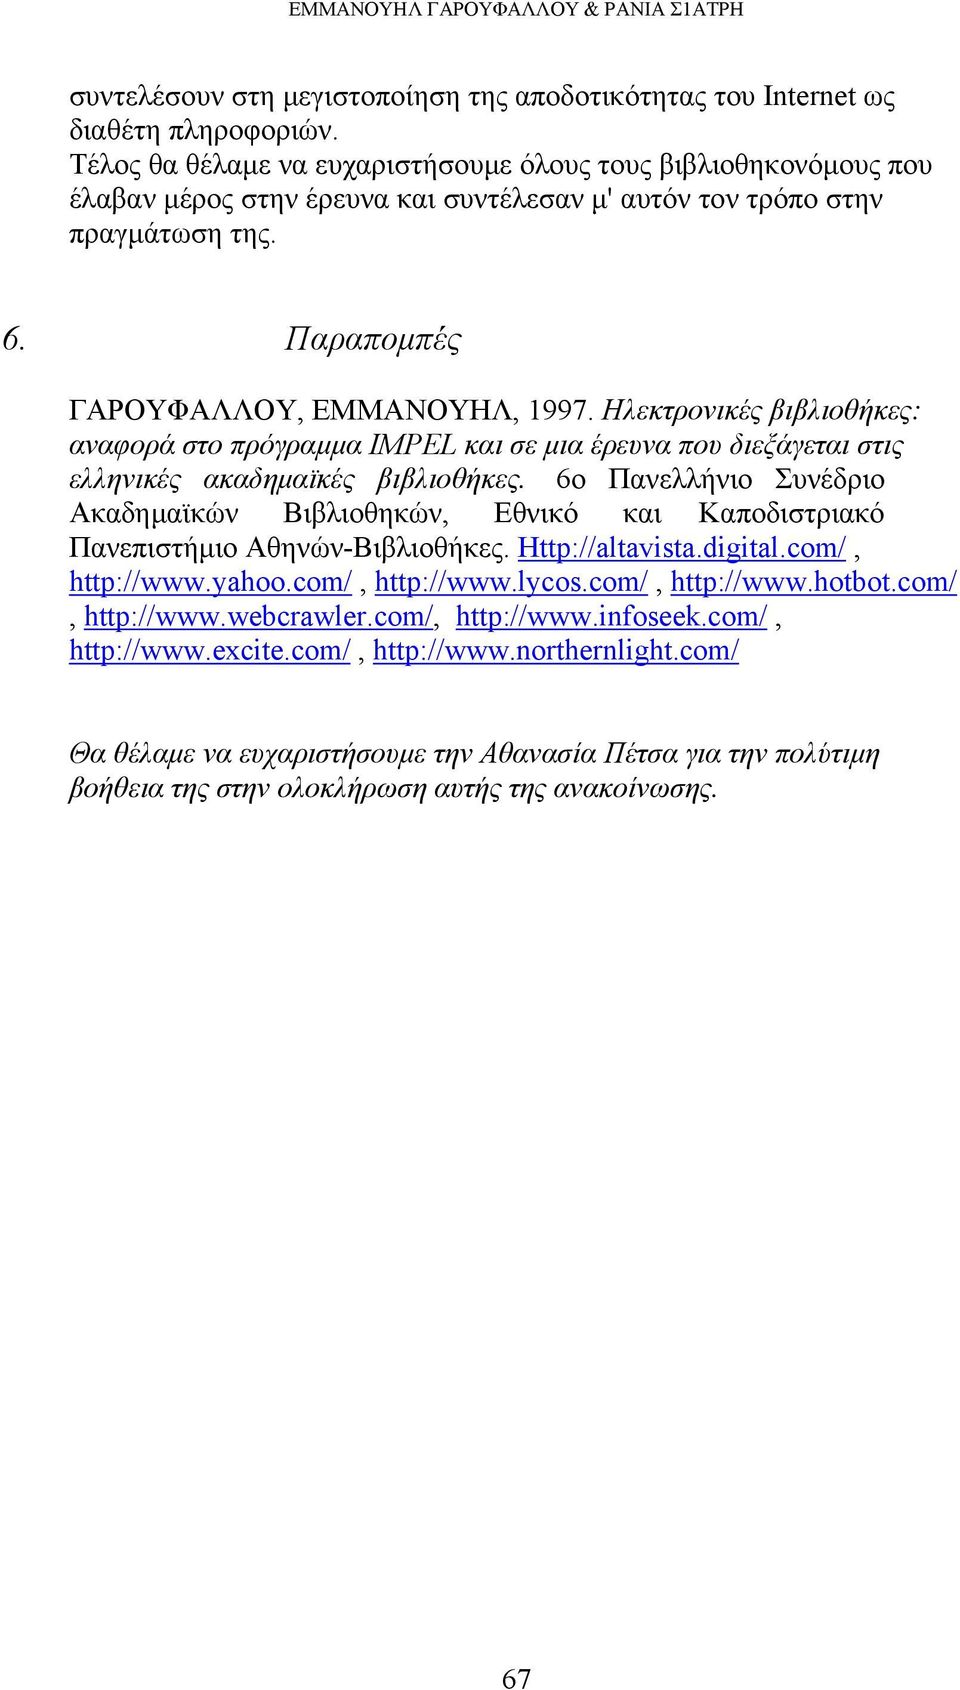 Ηλεκτρονικές βιβλιοθήκες: αναφορά στο πρόγραμμα IMPEL και σε μια έρευνα που διεξάγεται στις ελληνικές ακαδημαϊκές βιβλιοθήκες.